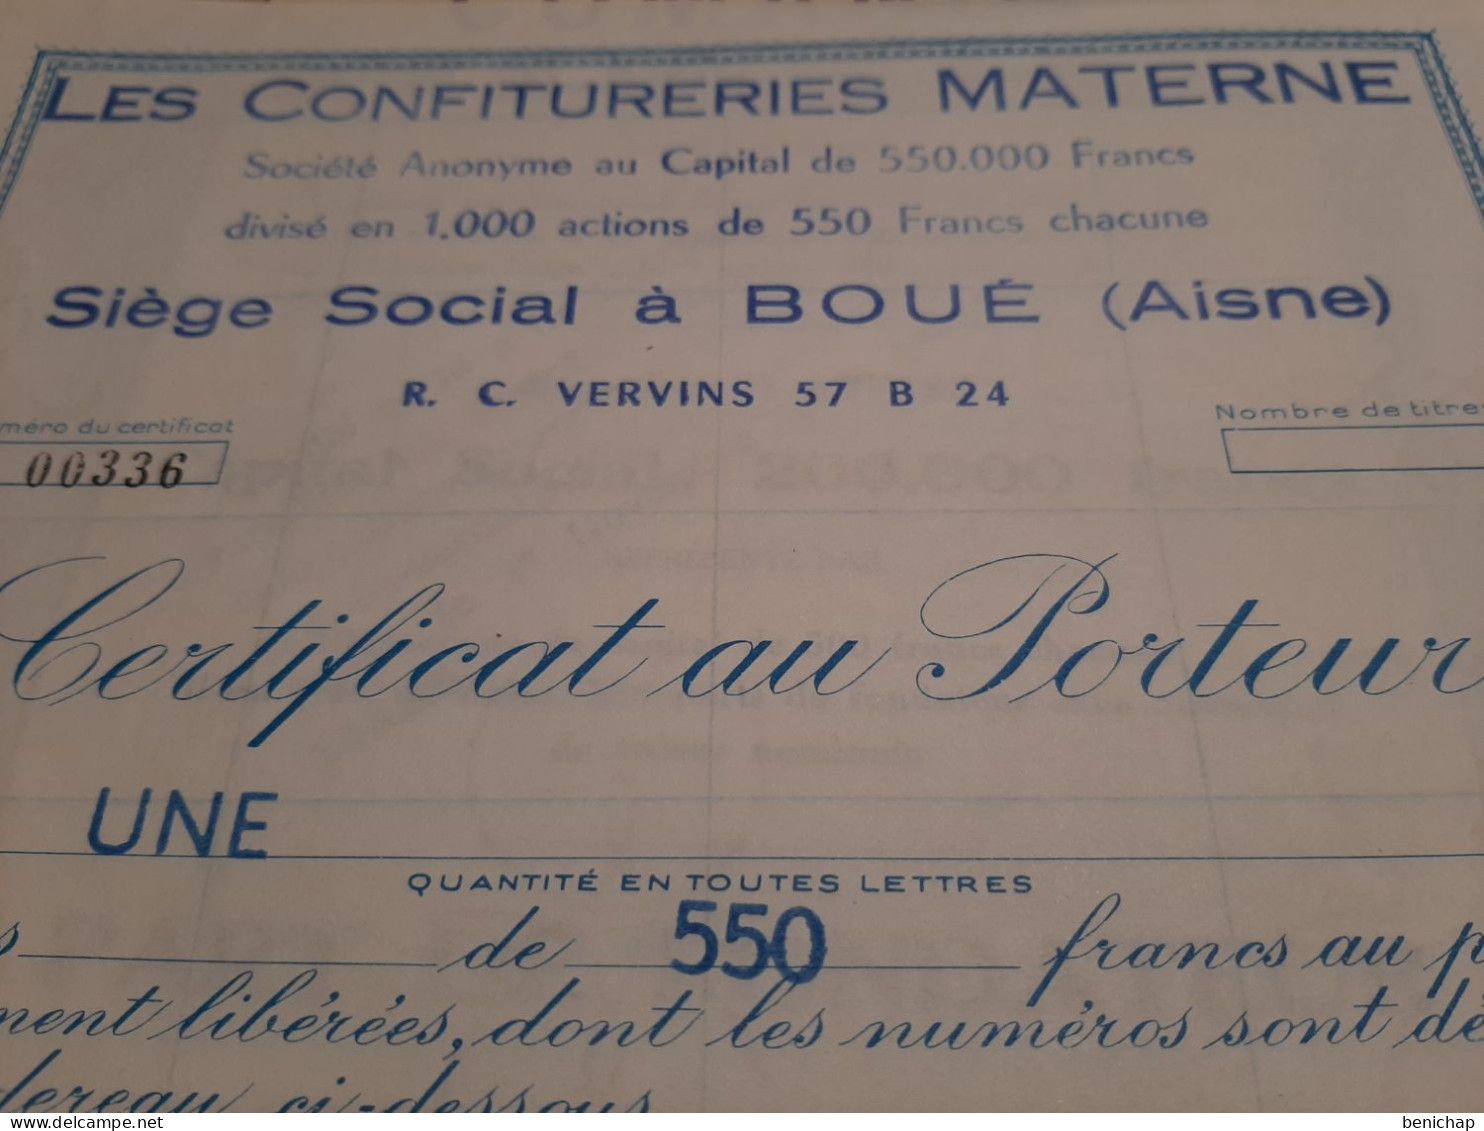 Les Confitureries Materne - Certificat Au Porteur De 1 Action De 550 Frs - Aisne - Boué - 1 Octobre 1966. - Agriculture